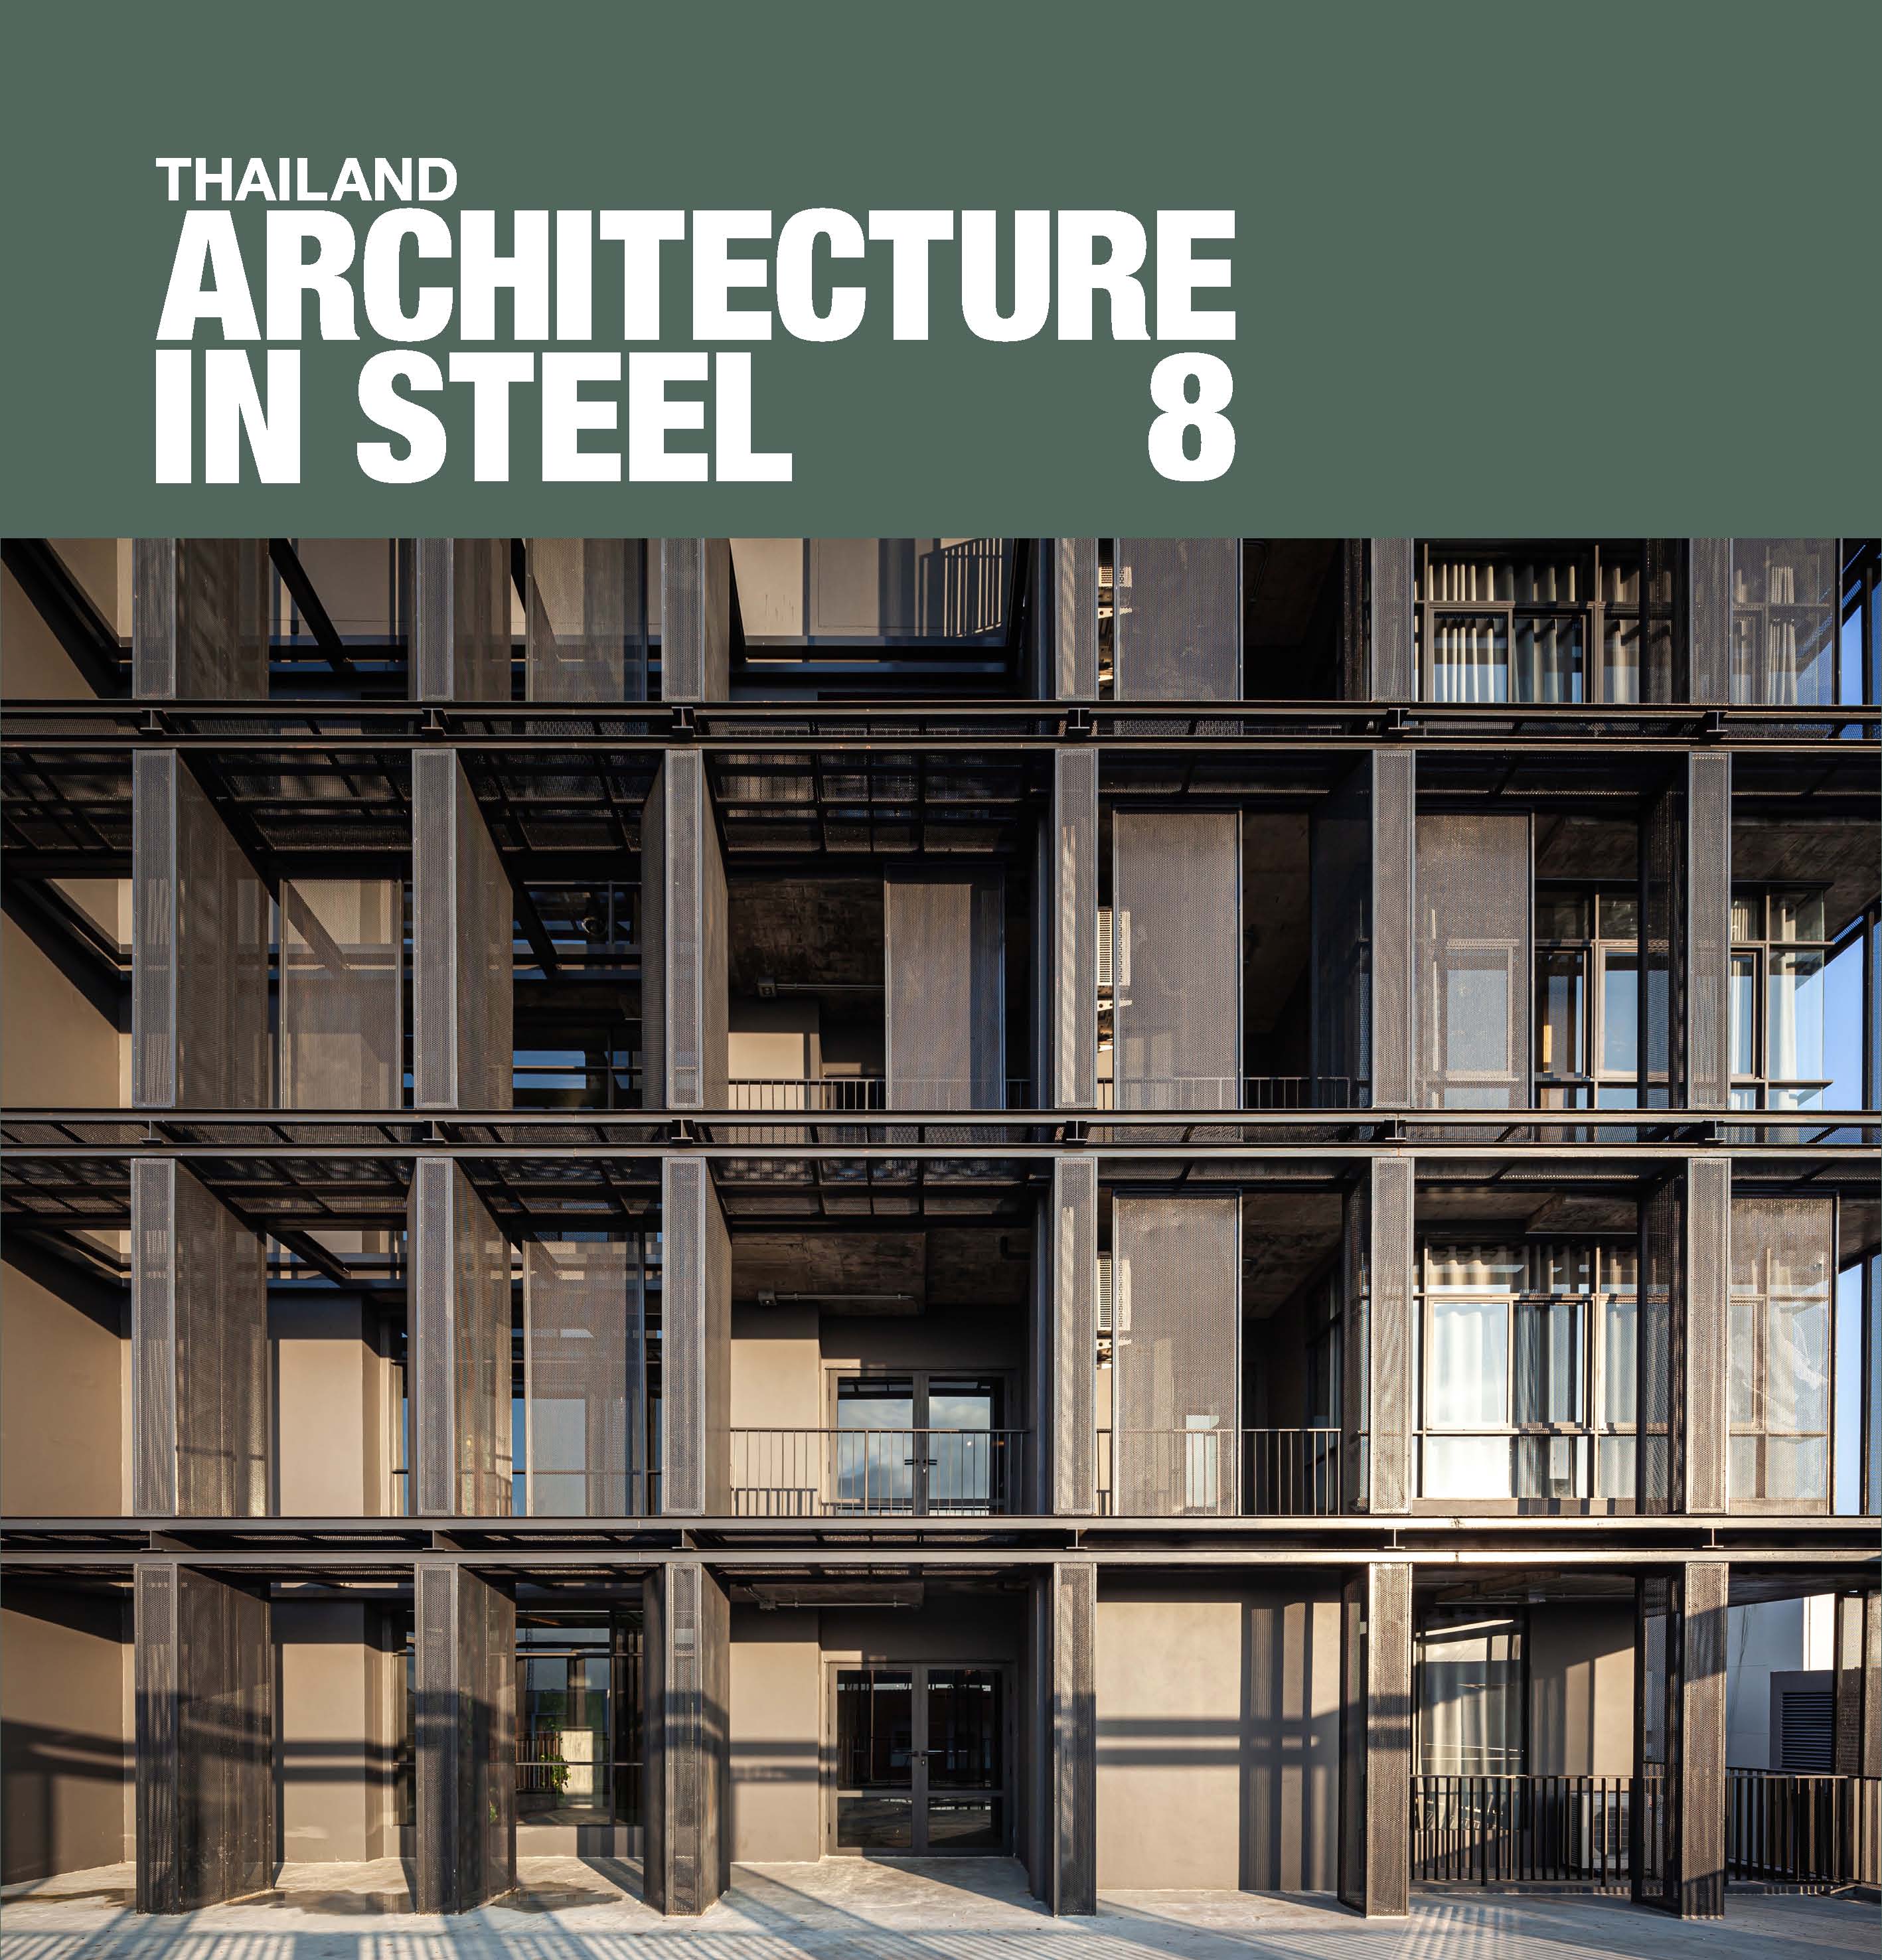 Thailand Architecture in Steel 8